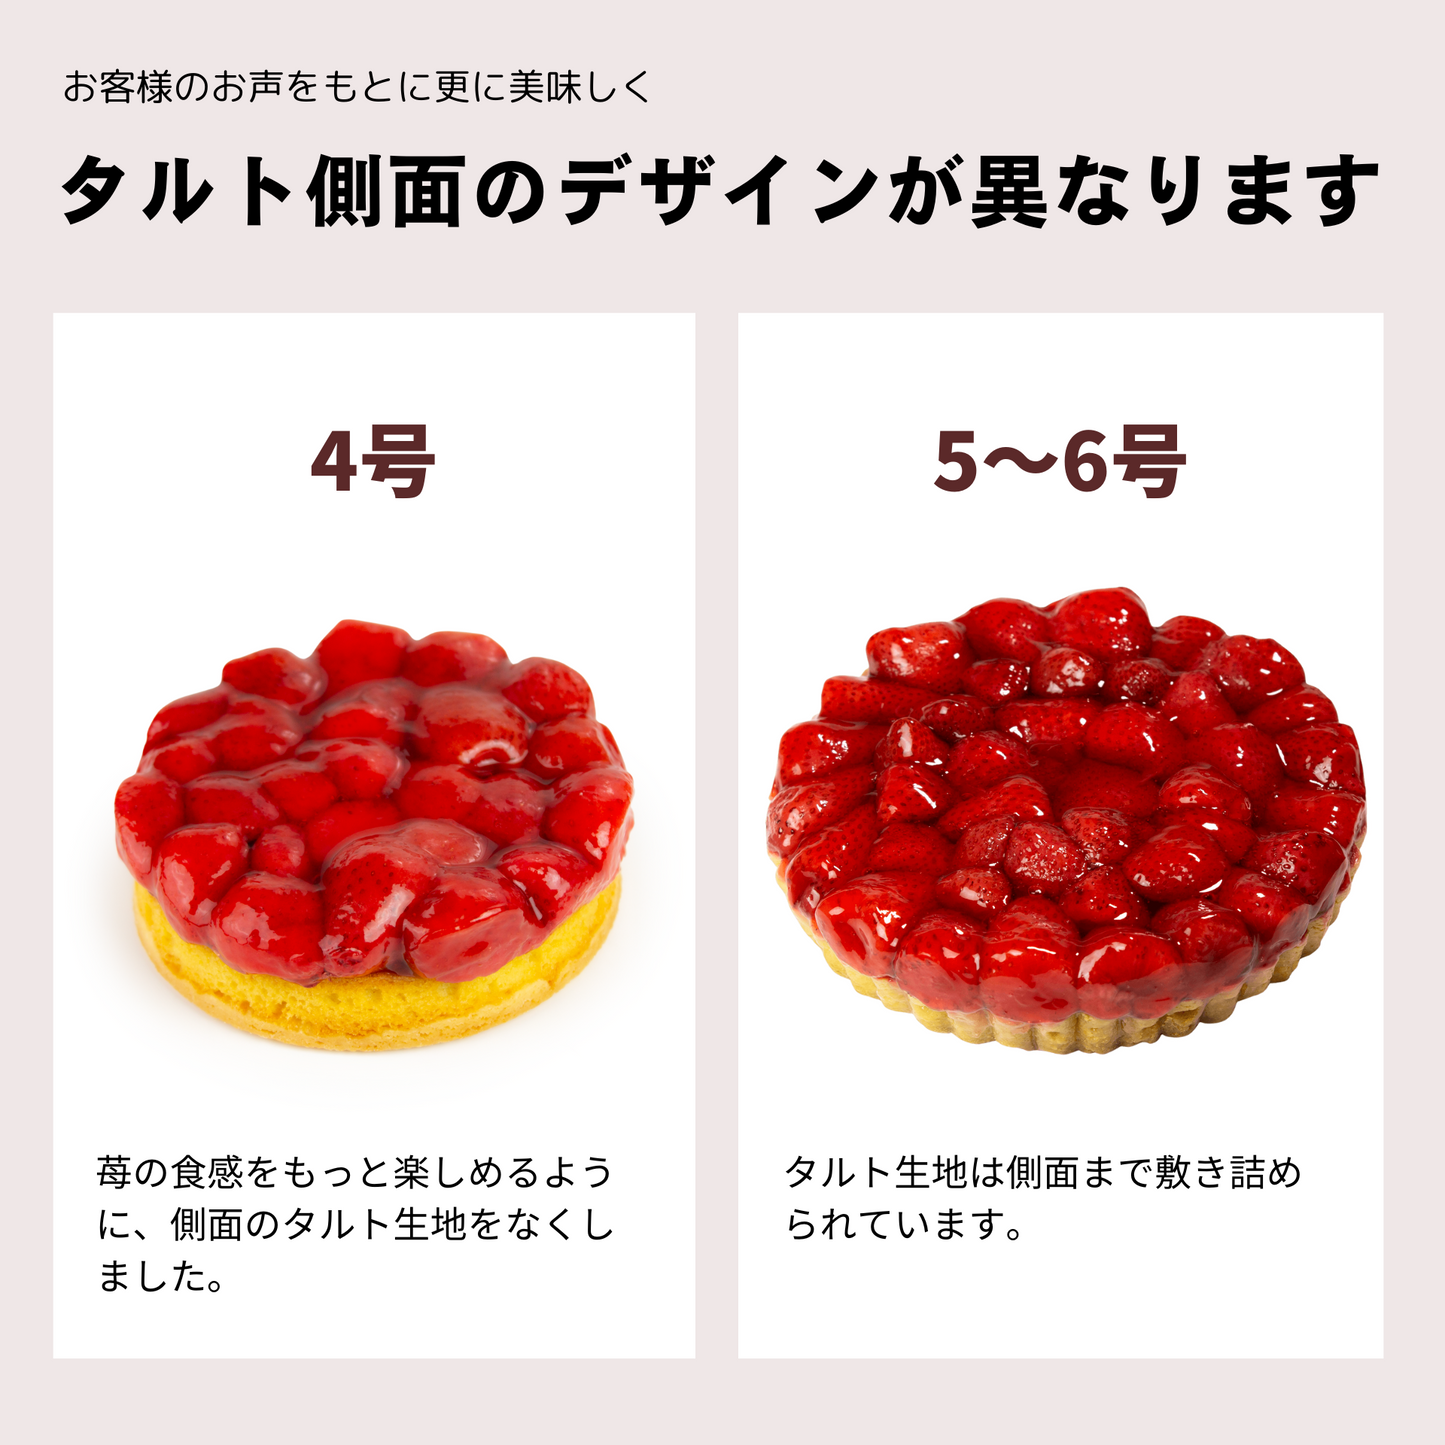 【宅配】苺のコンポートタルトケーキ